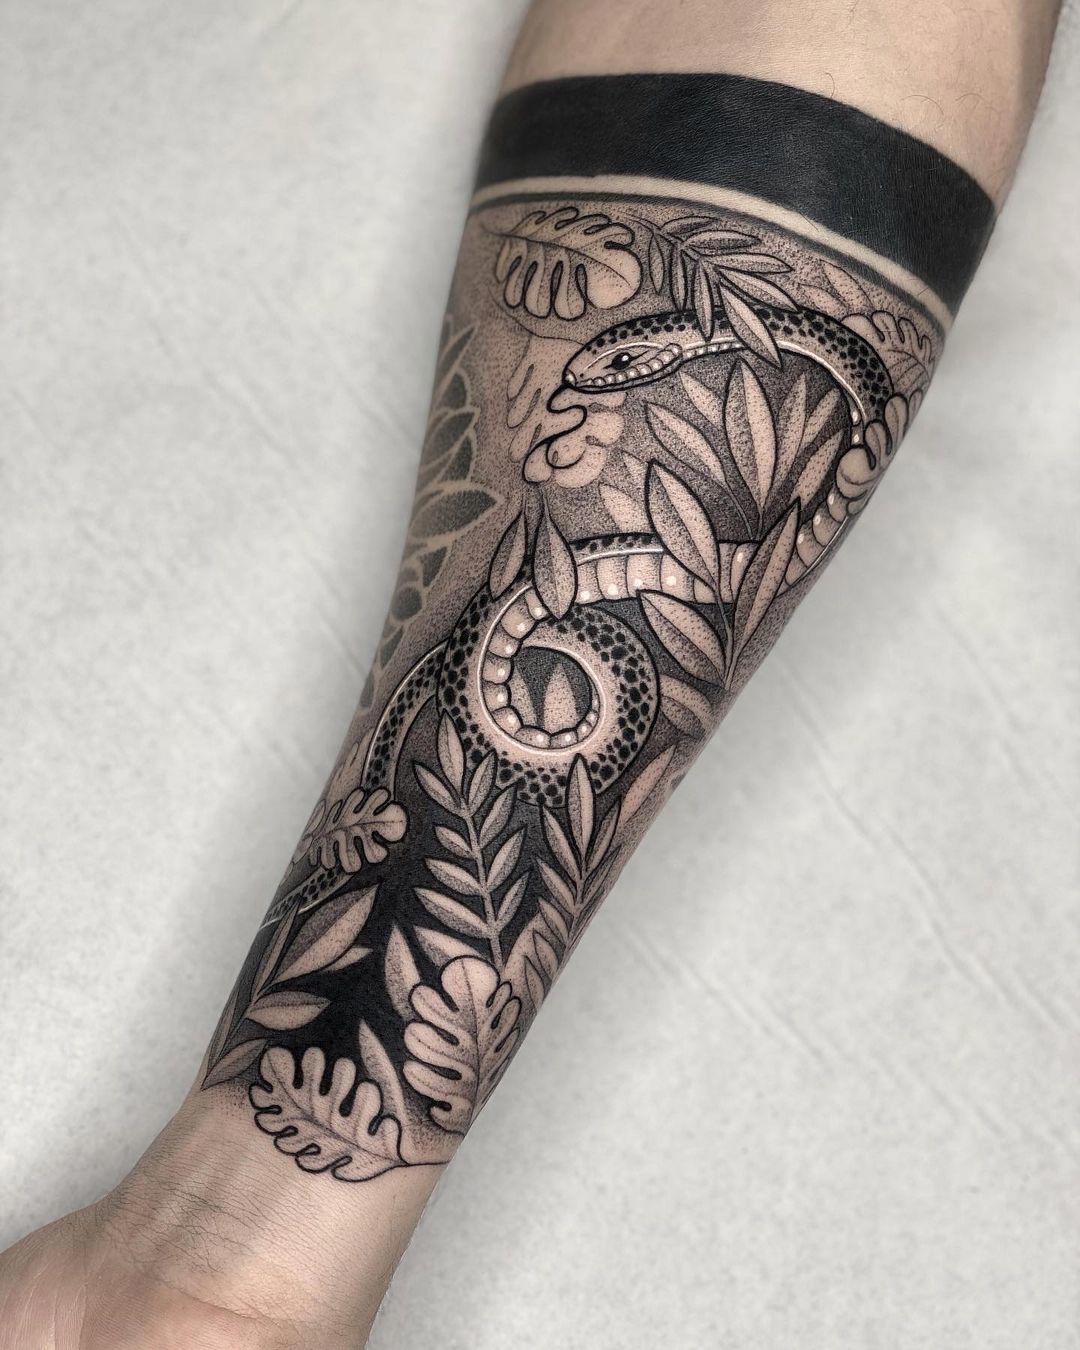 Tatuaje medio brazo hombre